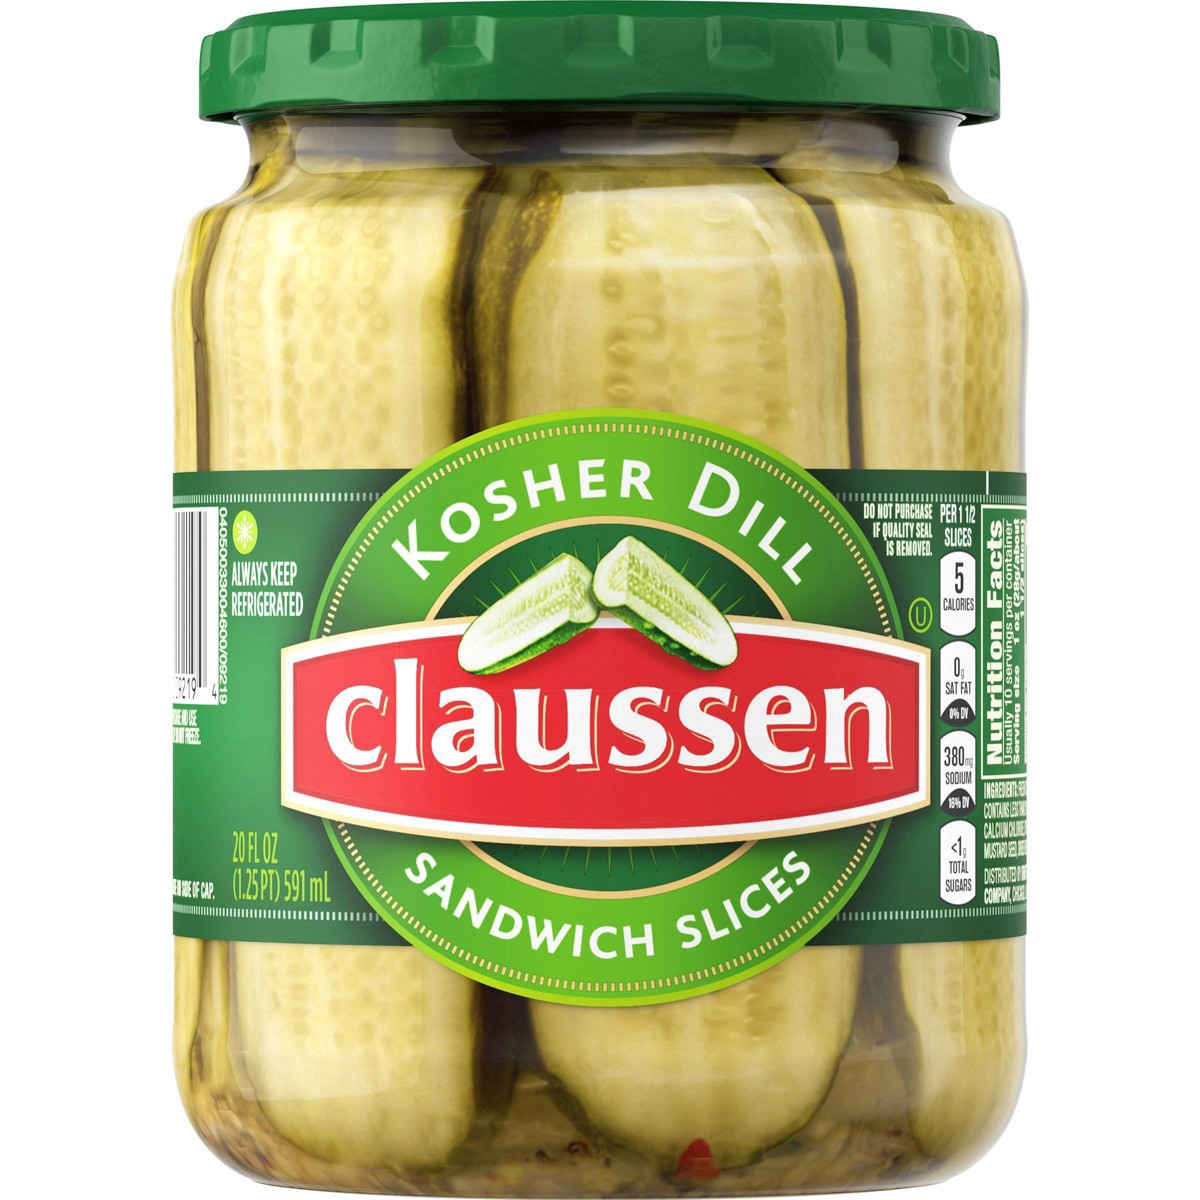 slide 75 of 144, Claussen Kosher Dill Pickle Sandwich Slices, 20 fl. oz. Jar, 20 fl oz